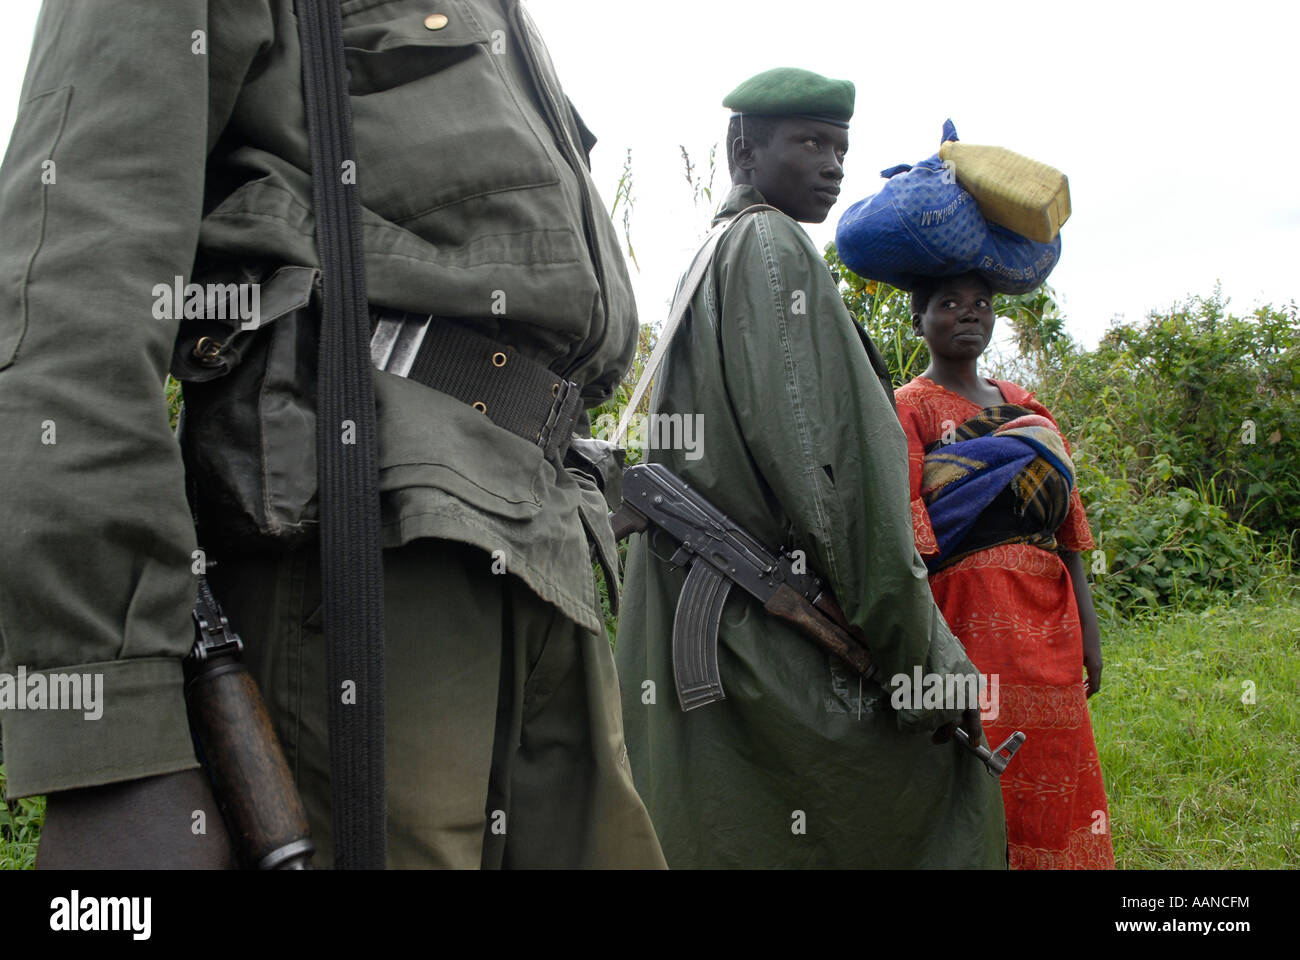 Les soldats du gouvernement congolais des FARDC sont en garde avec un fusil Kalachnikov AK-47 dans une zone rurale de la province du Nord-Kivu en RD Congo Afrique Banque D'Images